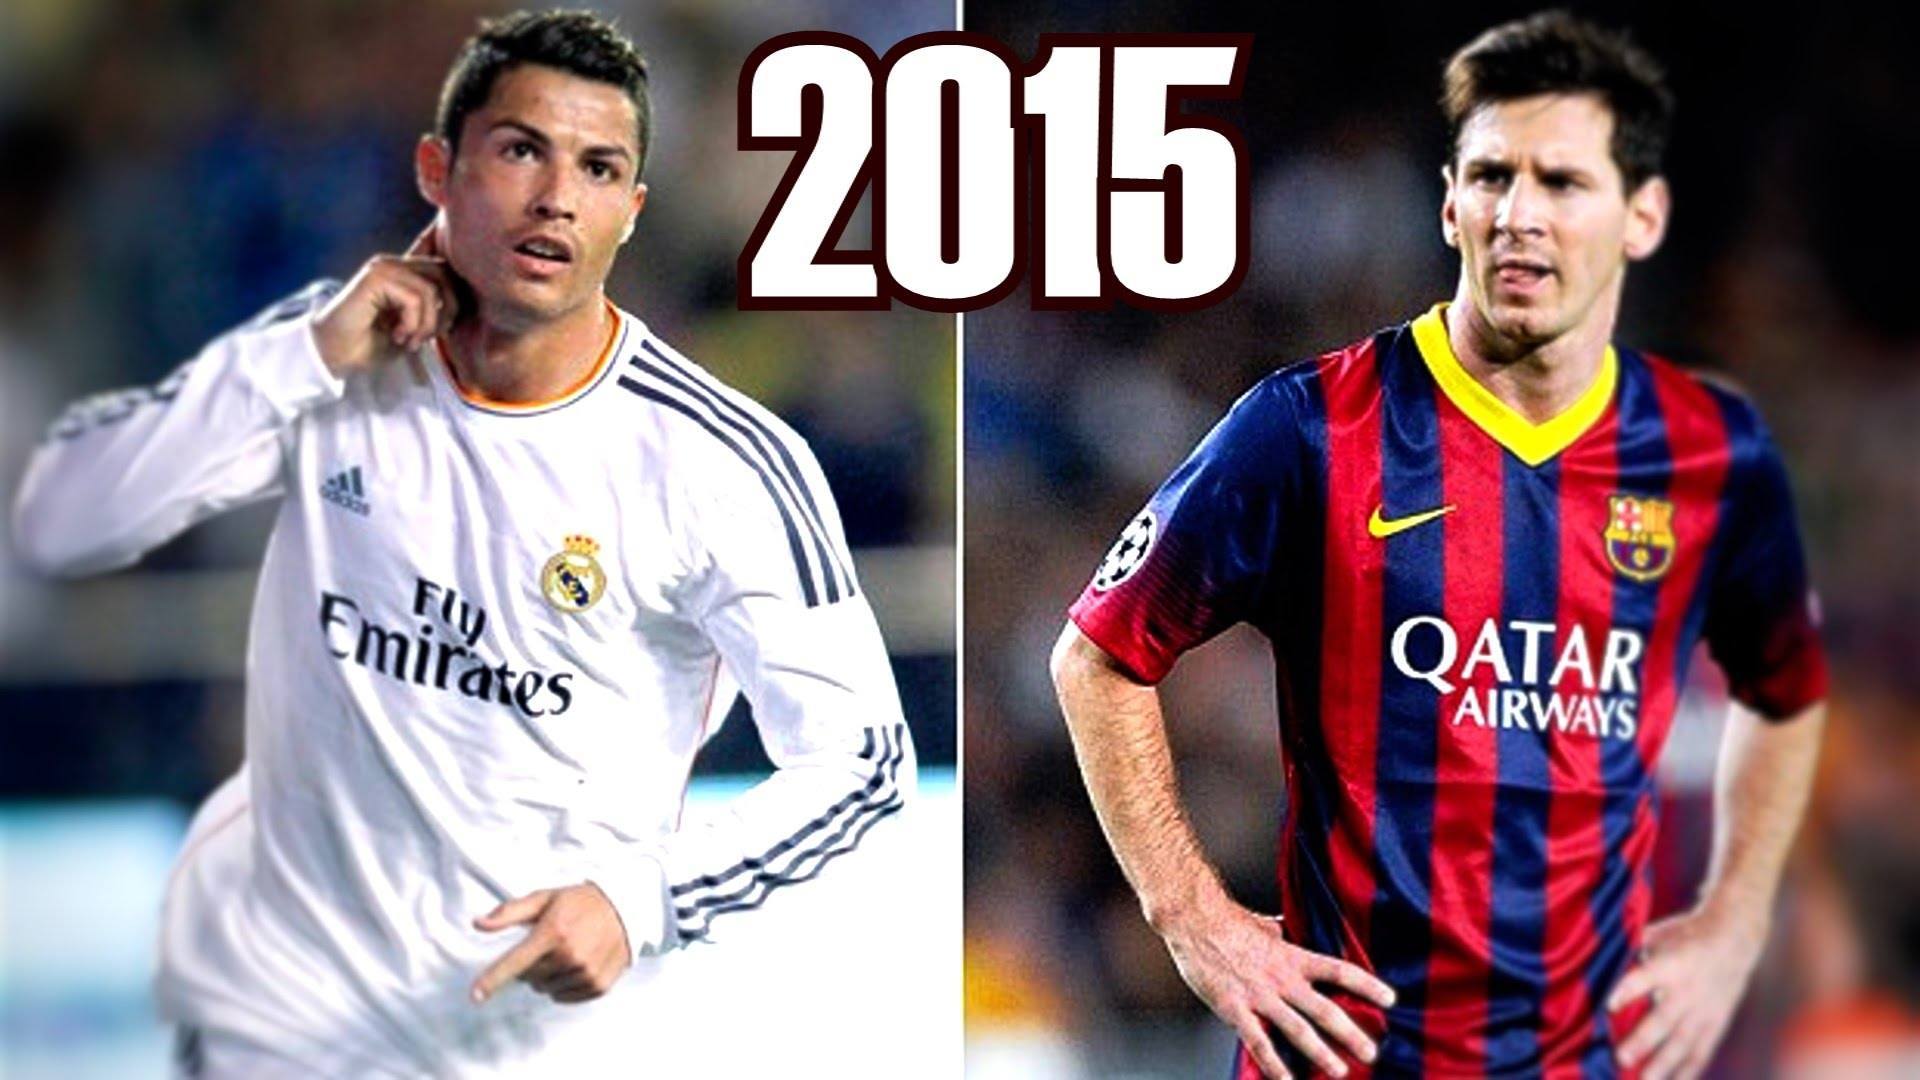 Lionel Messi vs Cristiano Ronaldo - The Difference - HD 